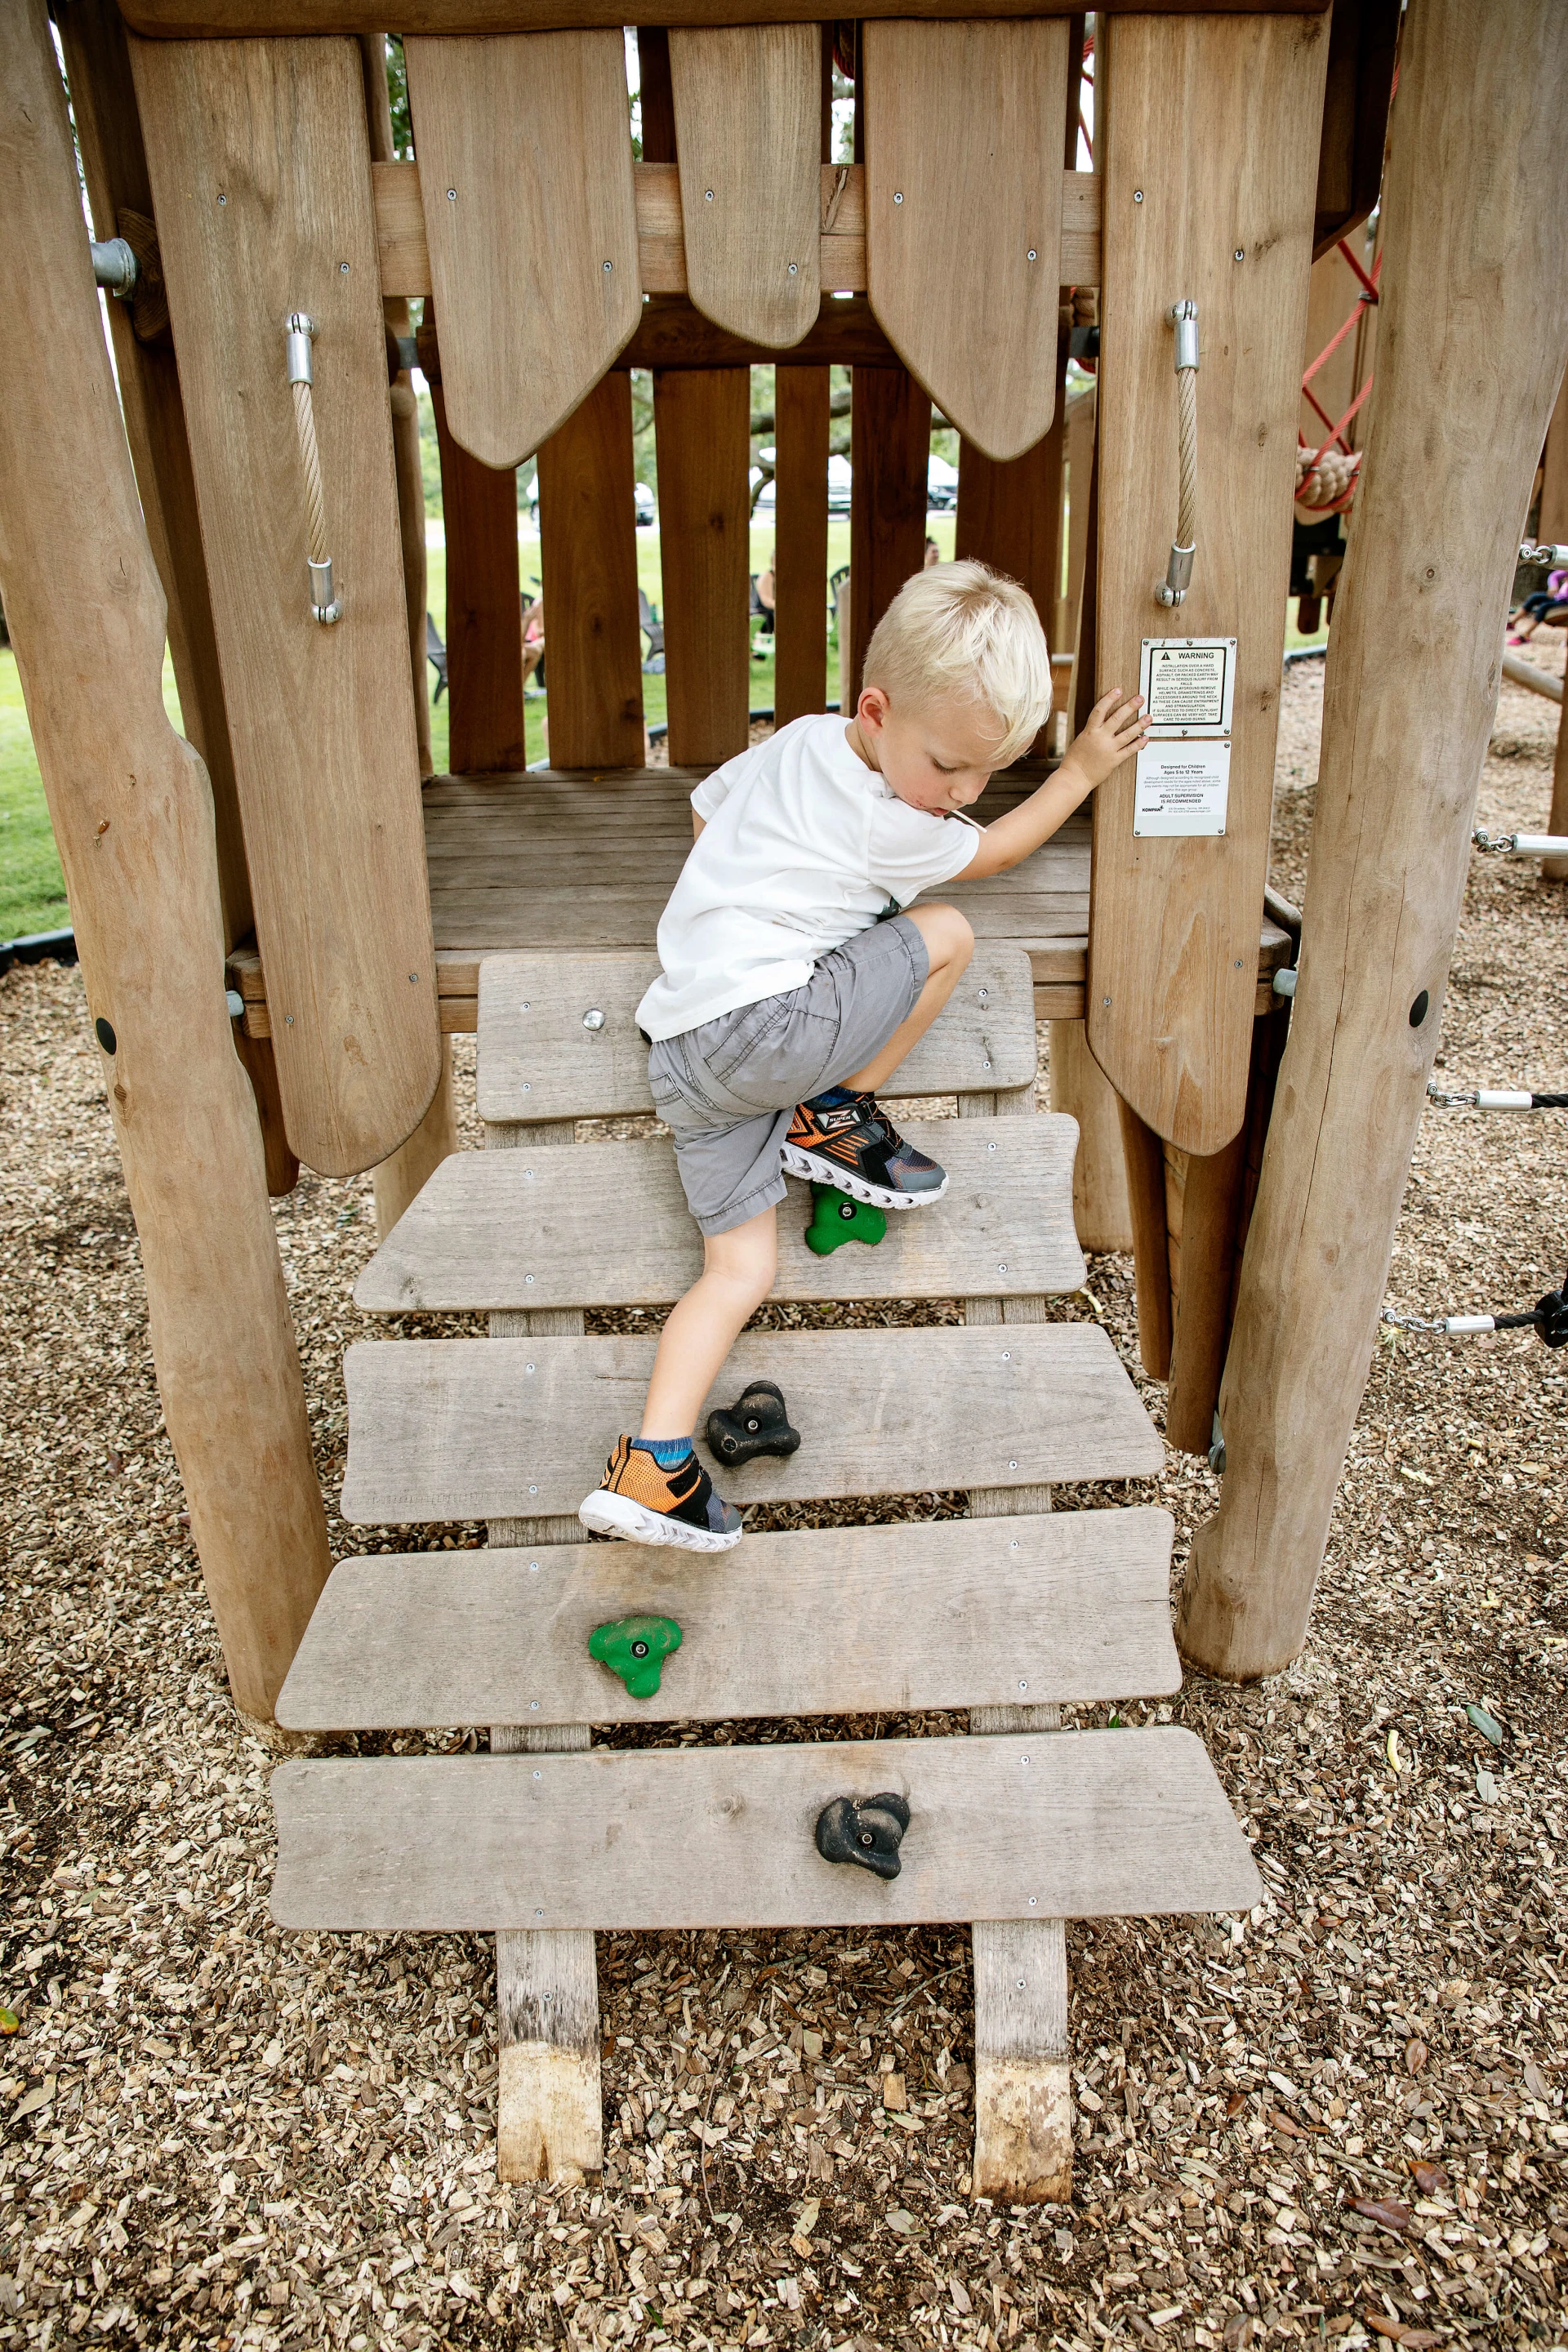 Attrezzature da gioco per bambini da 3 a 6 anni, bambino che si arrampica su un campo da gioco in legno